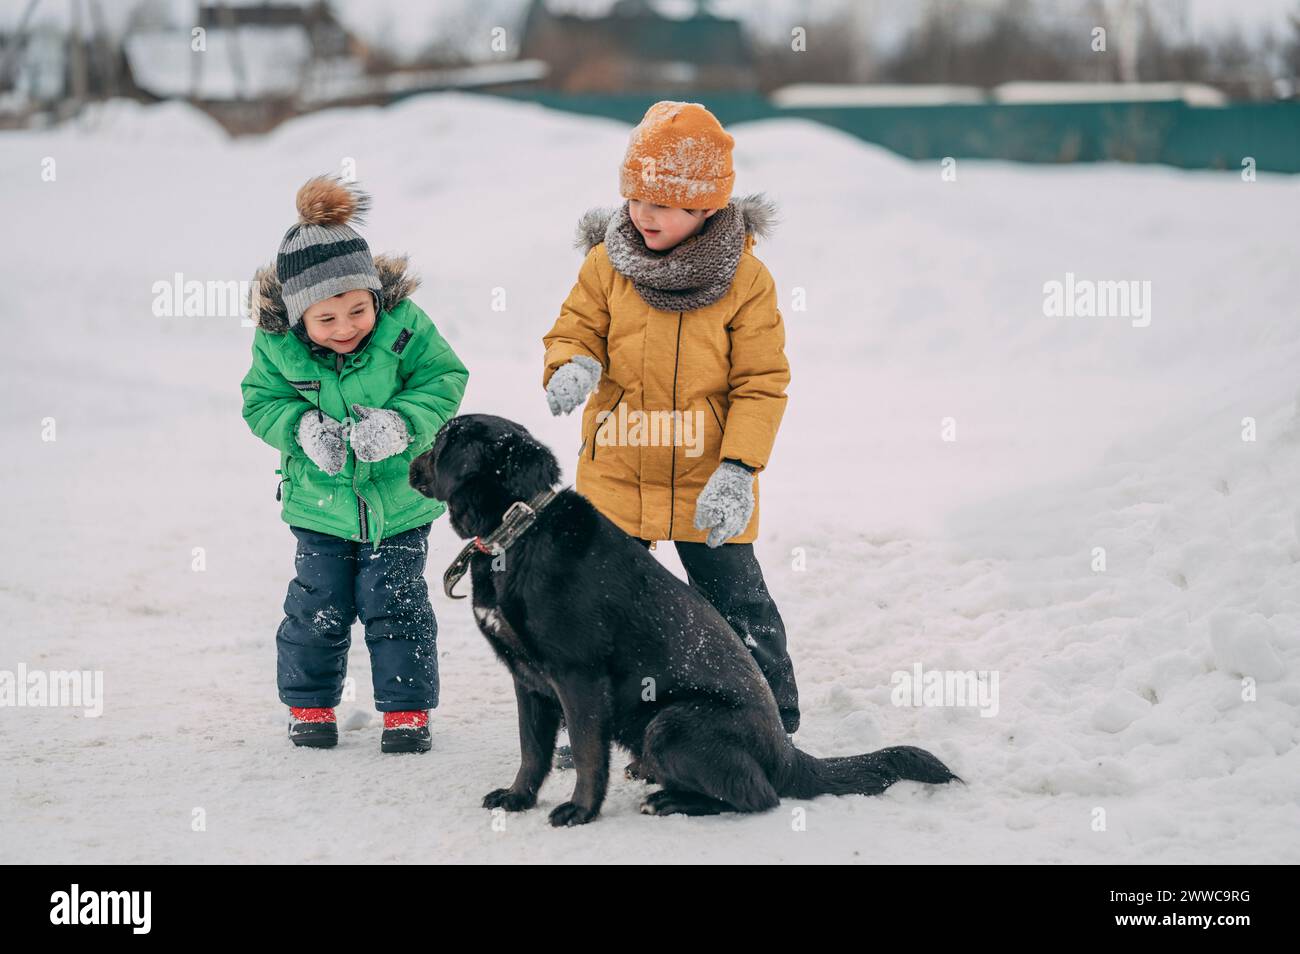 Niños felices con ropa de abrigo y jugando con el perro en la nieve Foto de stock